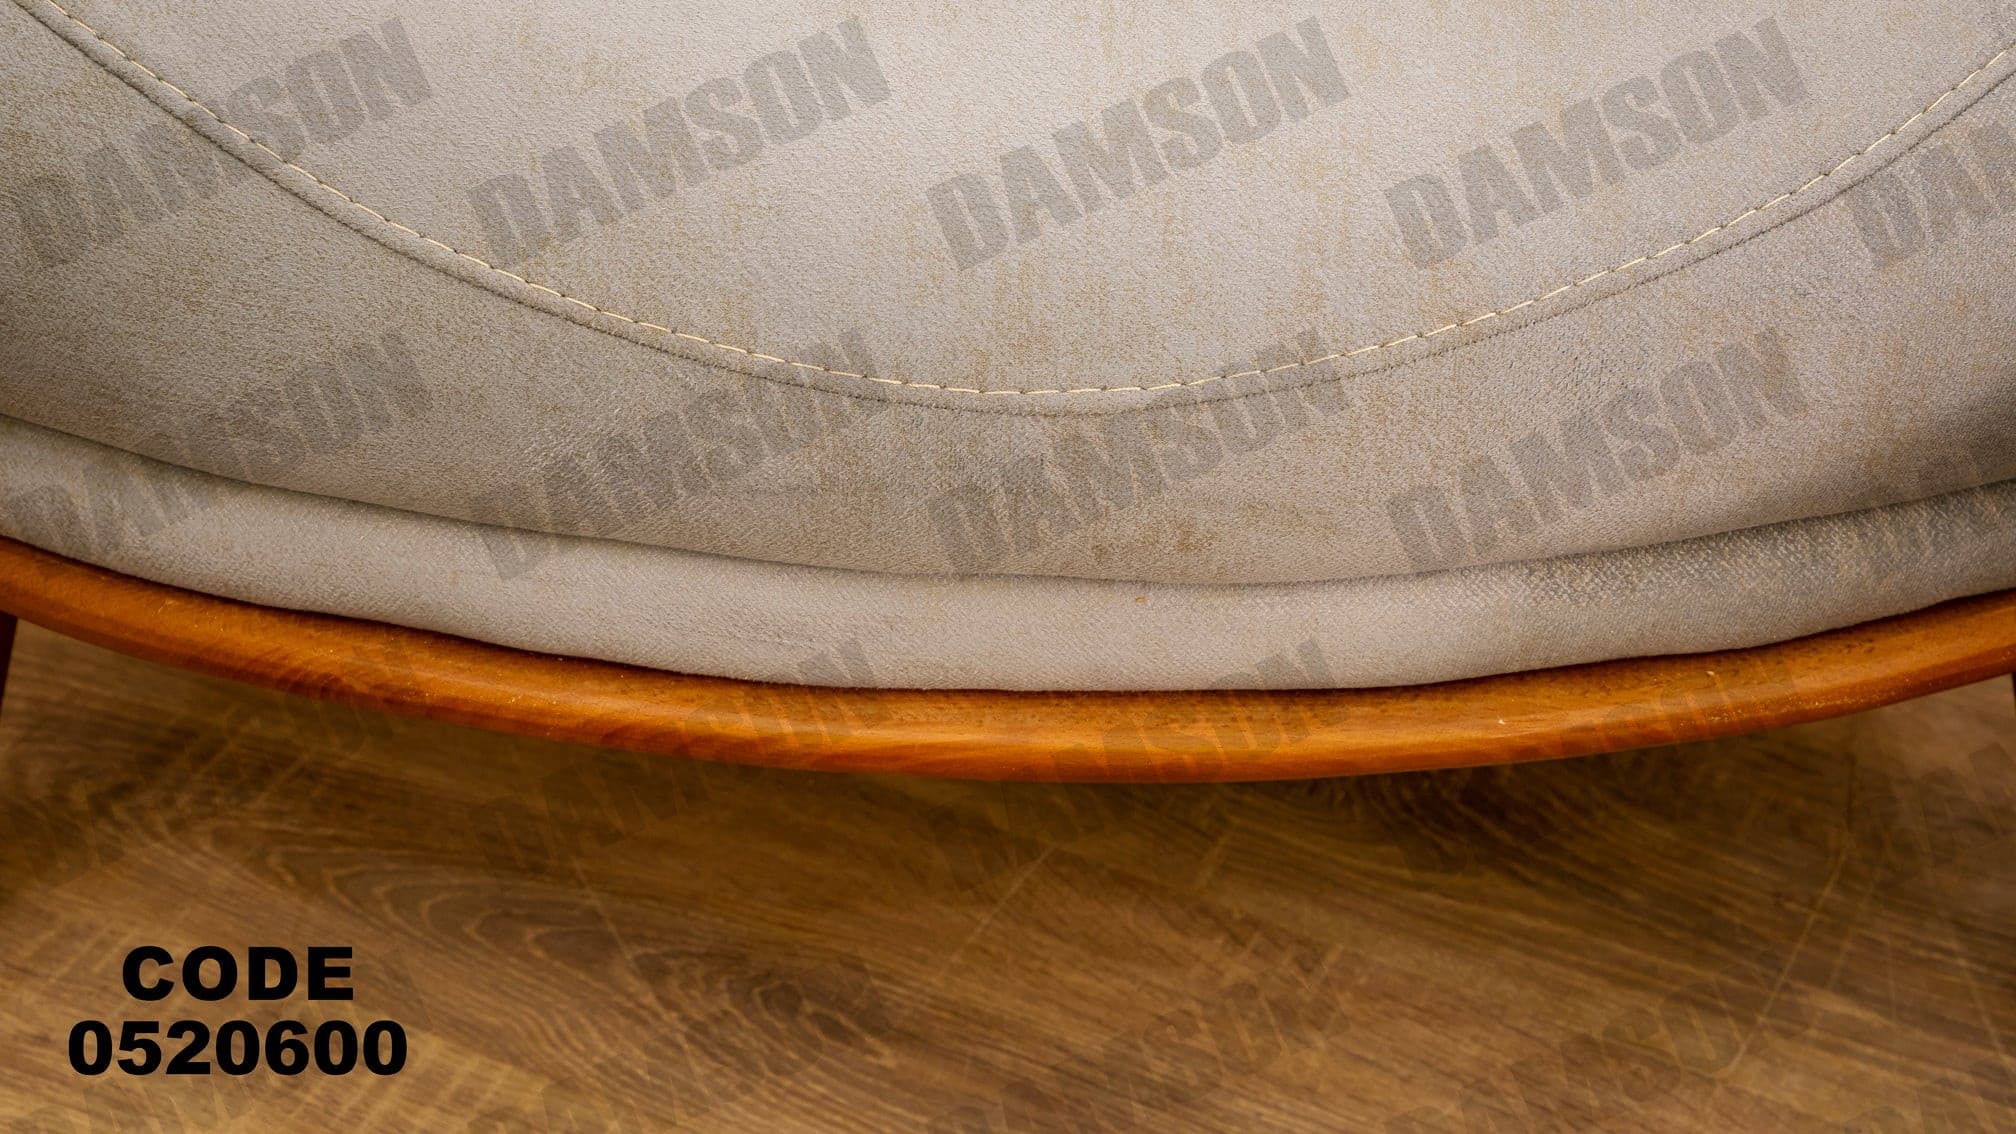 انترية 206 - Damson Furnitureانترية 206